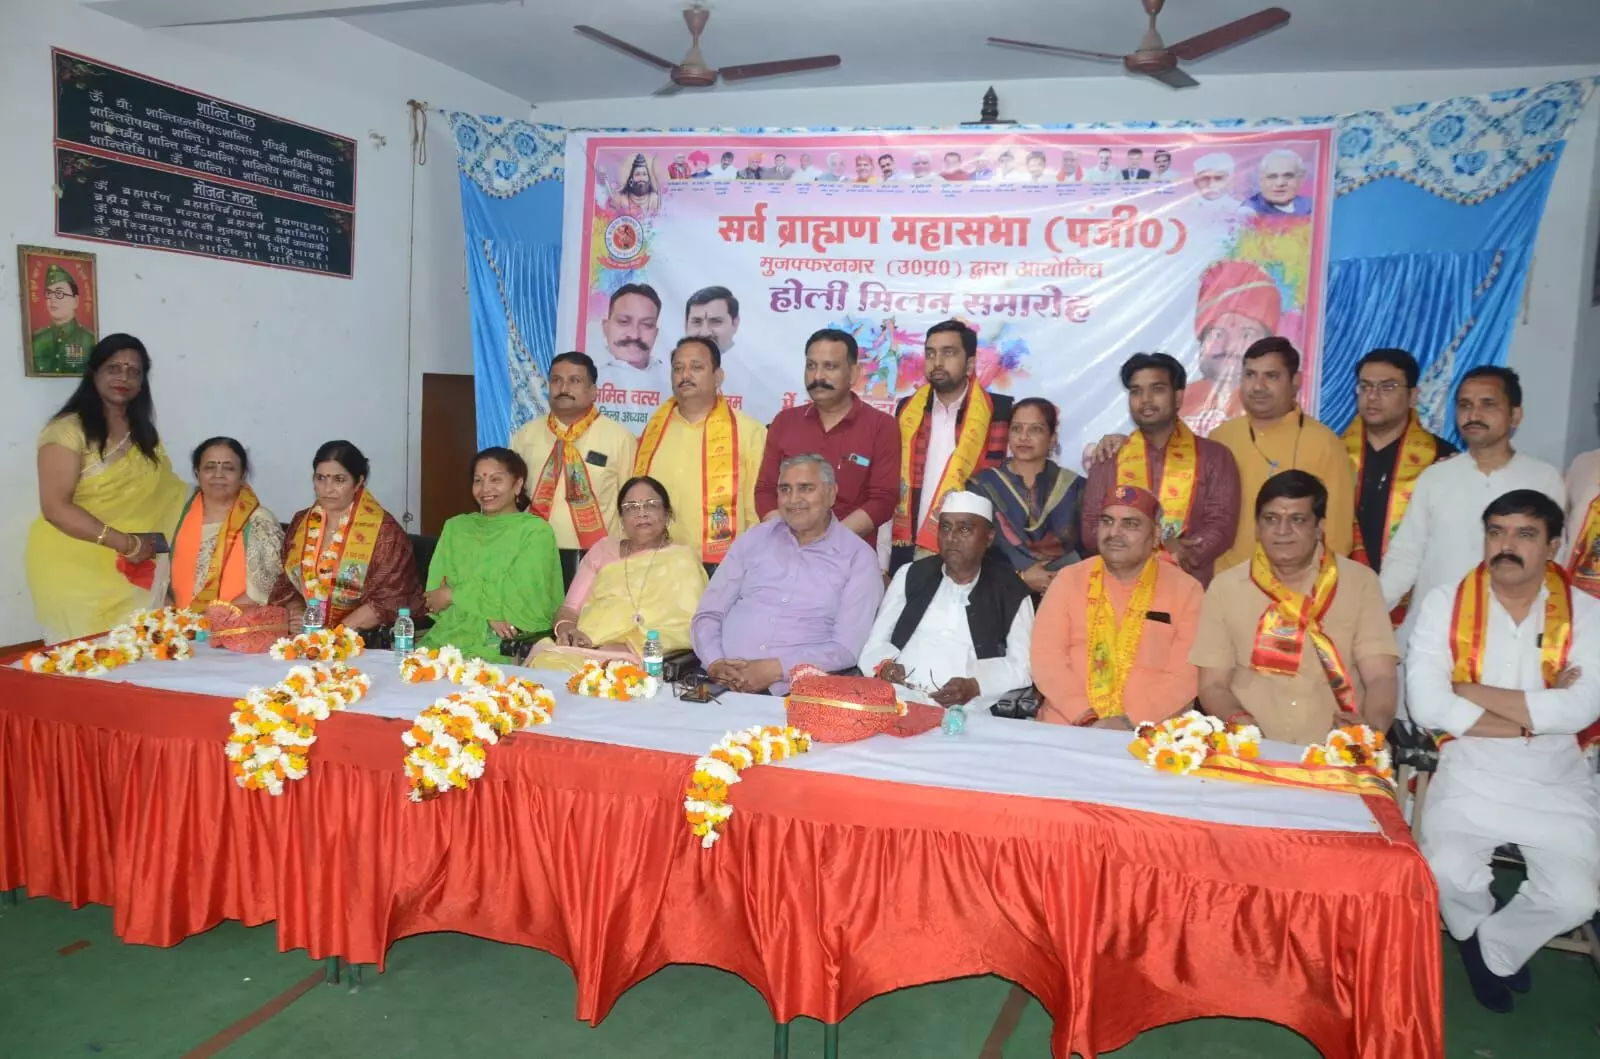 सरस्वती शिशु मंदिर में धूमधाम से किया होली मिलन समारोह आयोजित